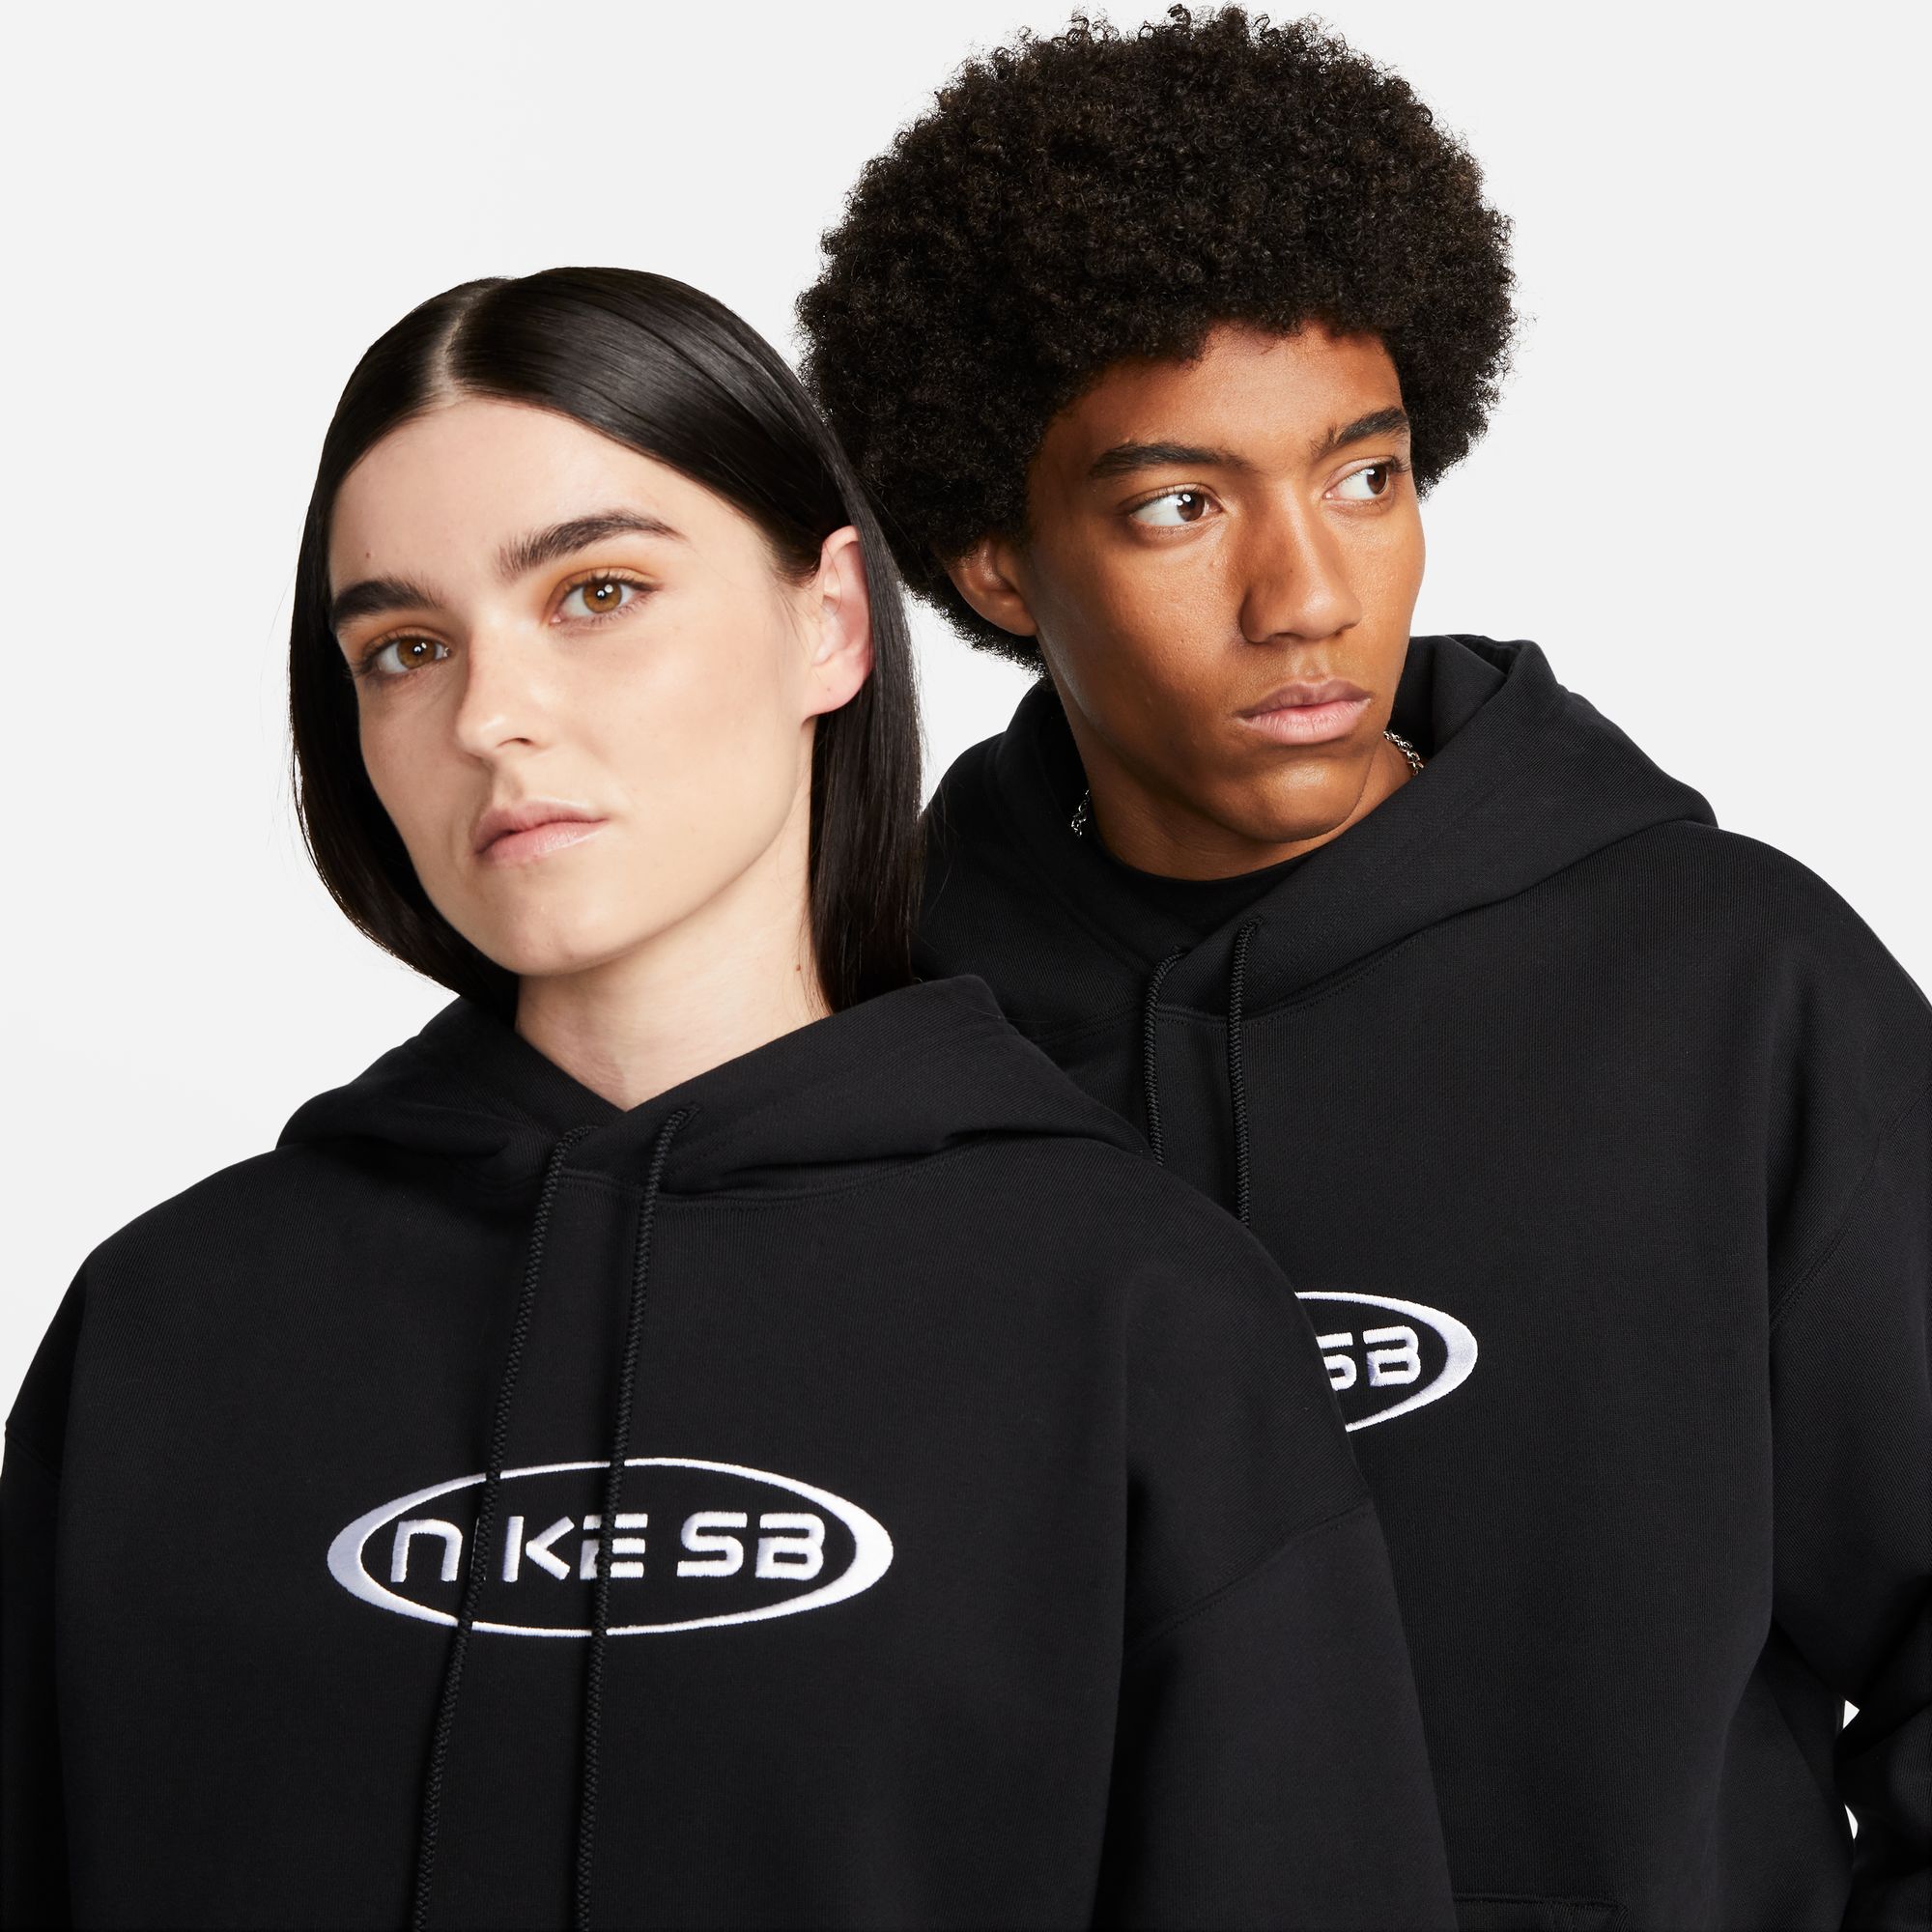 Nike SB Fleece Pullover Skate Hoodie Black